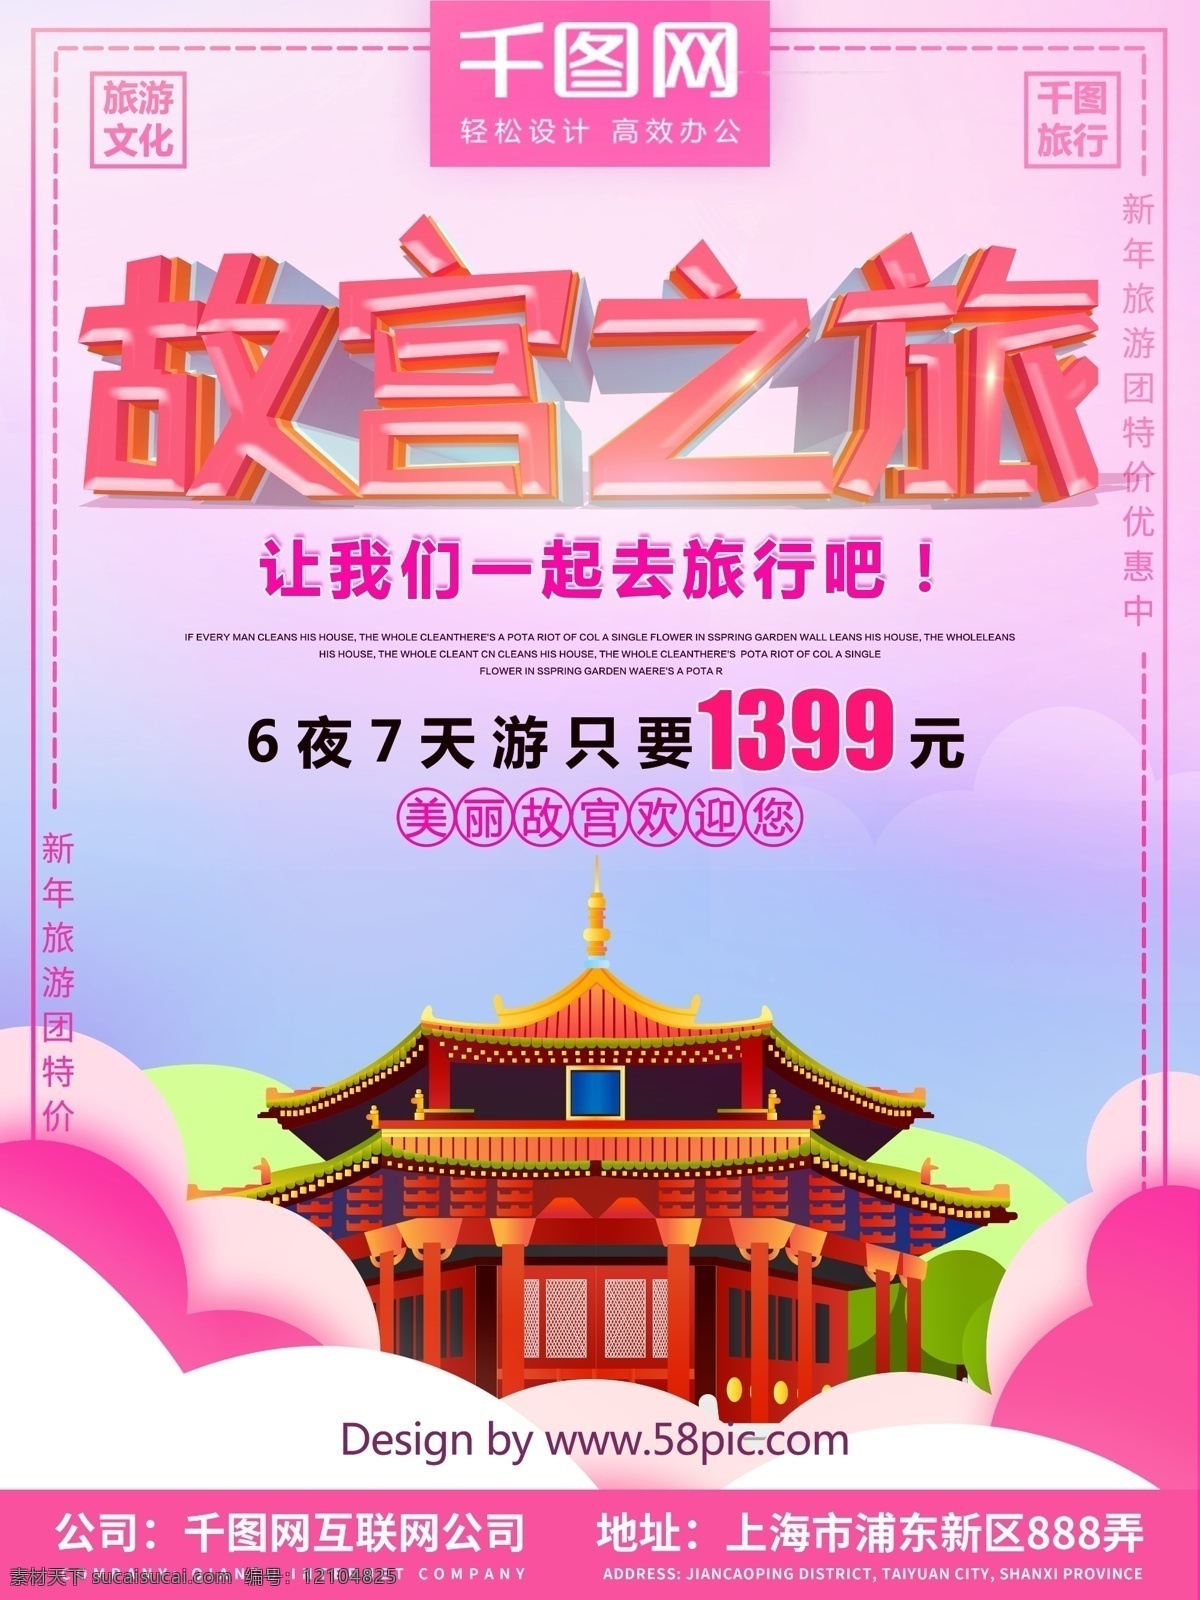 粉色 故宫 旅行 促销 海报 旅游 旅行社 旅行海报 粉色海报 故宫旅行